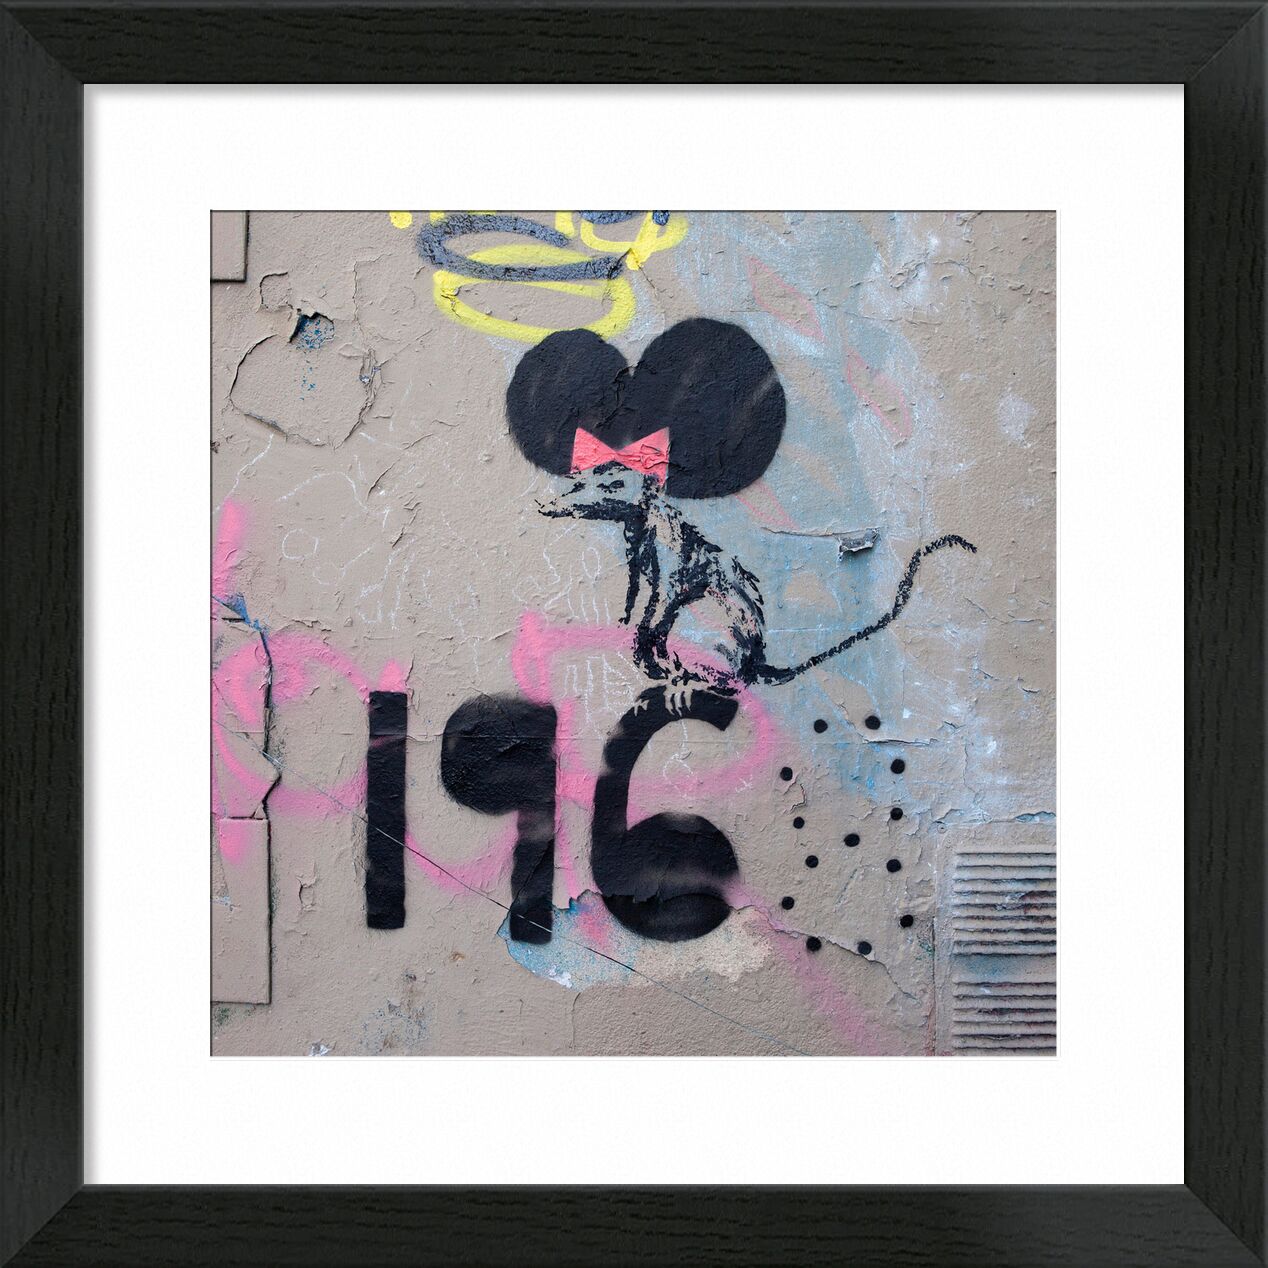 Mayo de 1968, La Rata - Banksy desde Bellas artes, Prodi Art, París, rata, arte callejero, banky